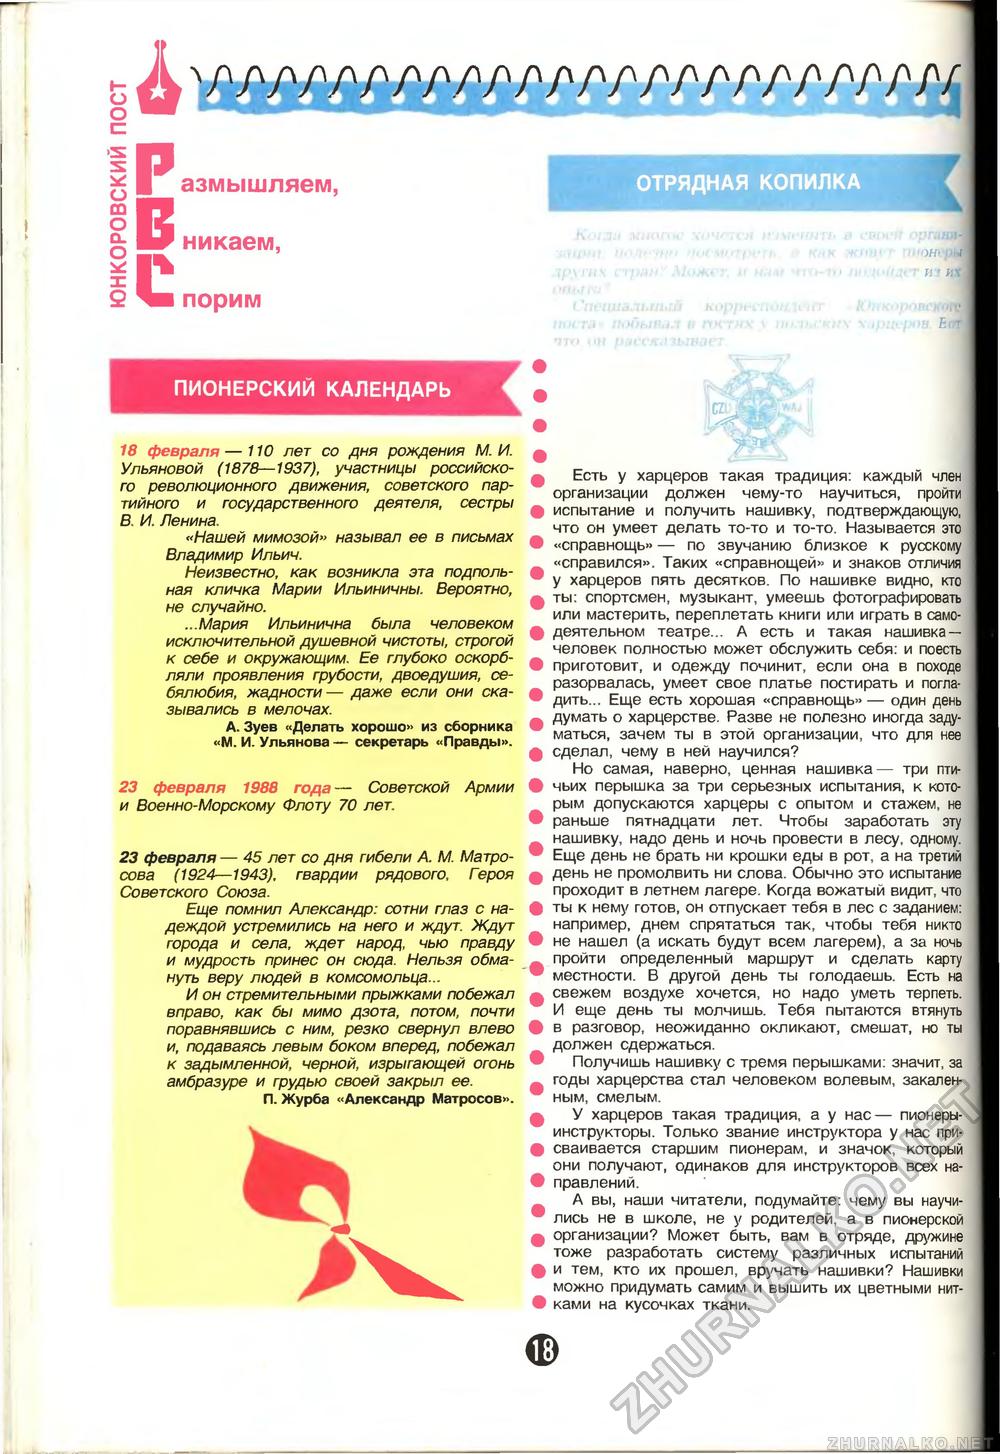  1988-02,  20